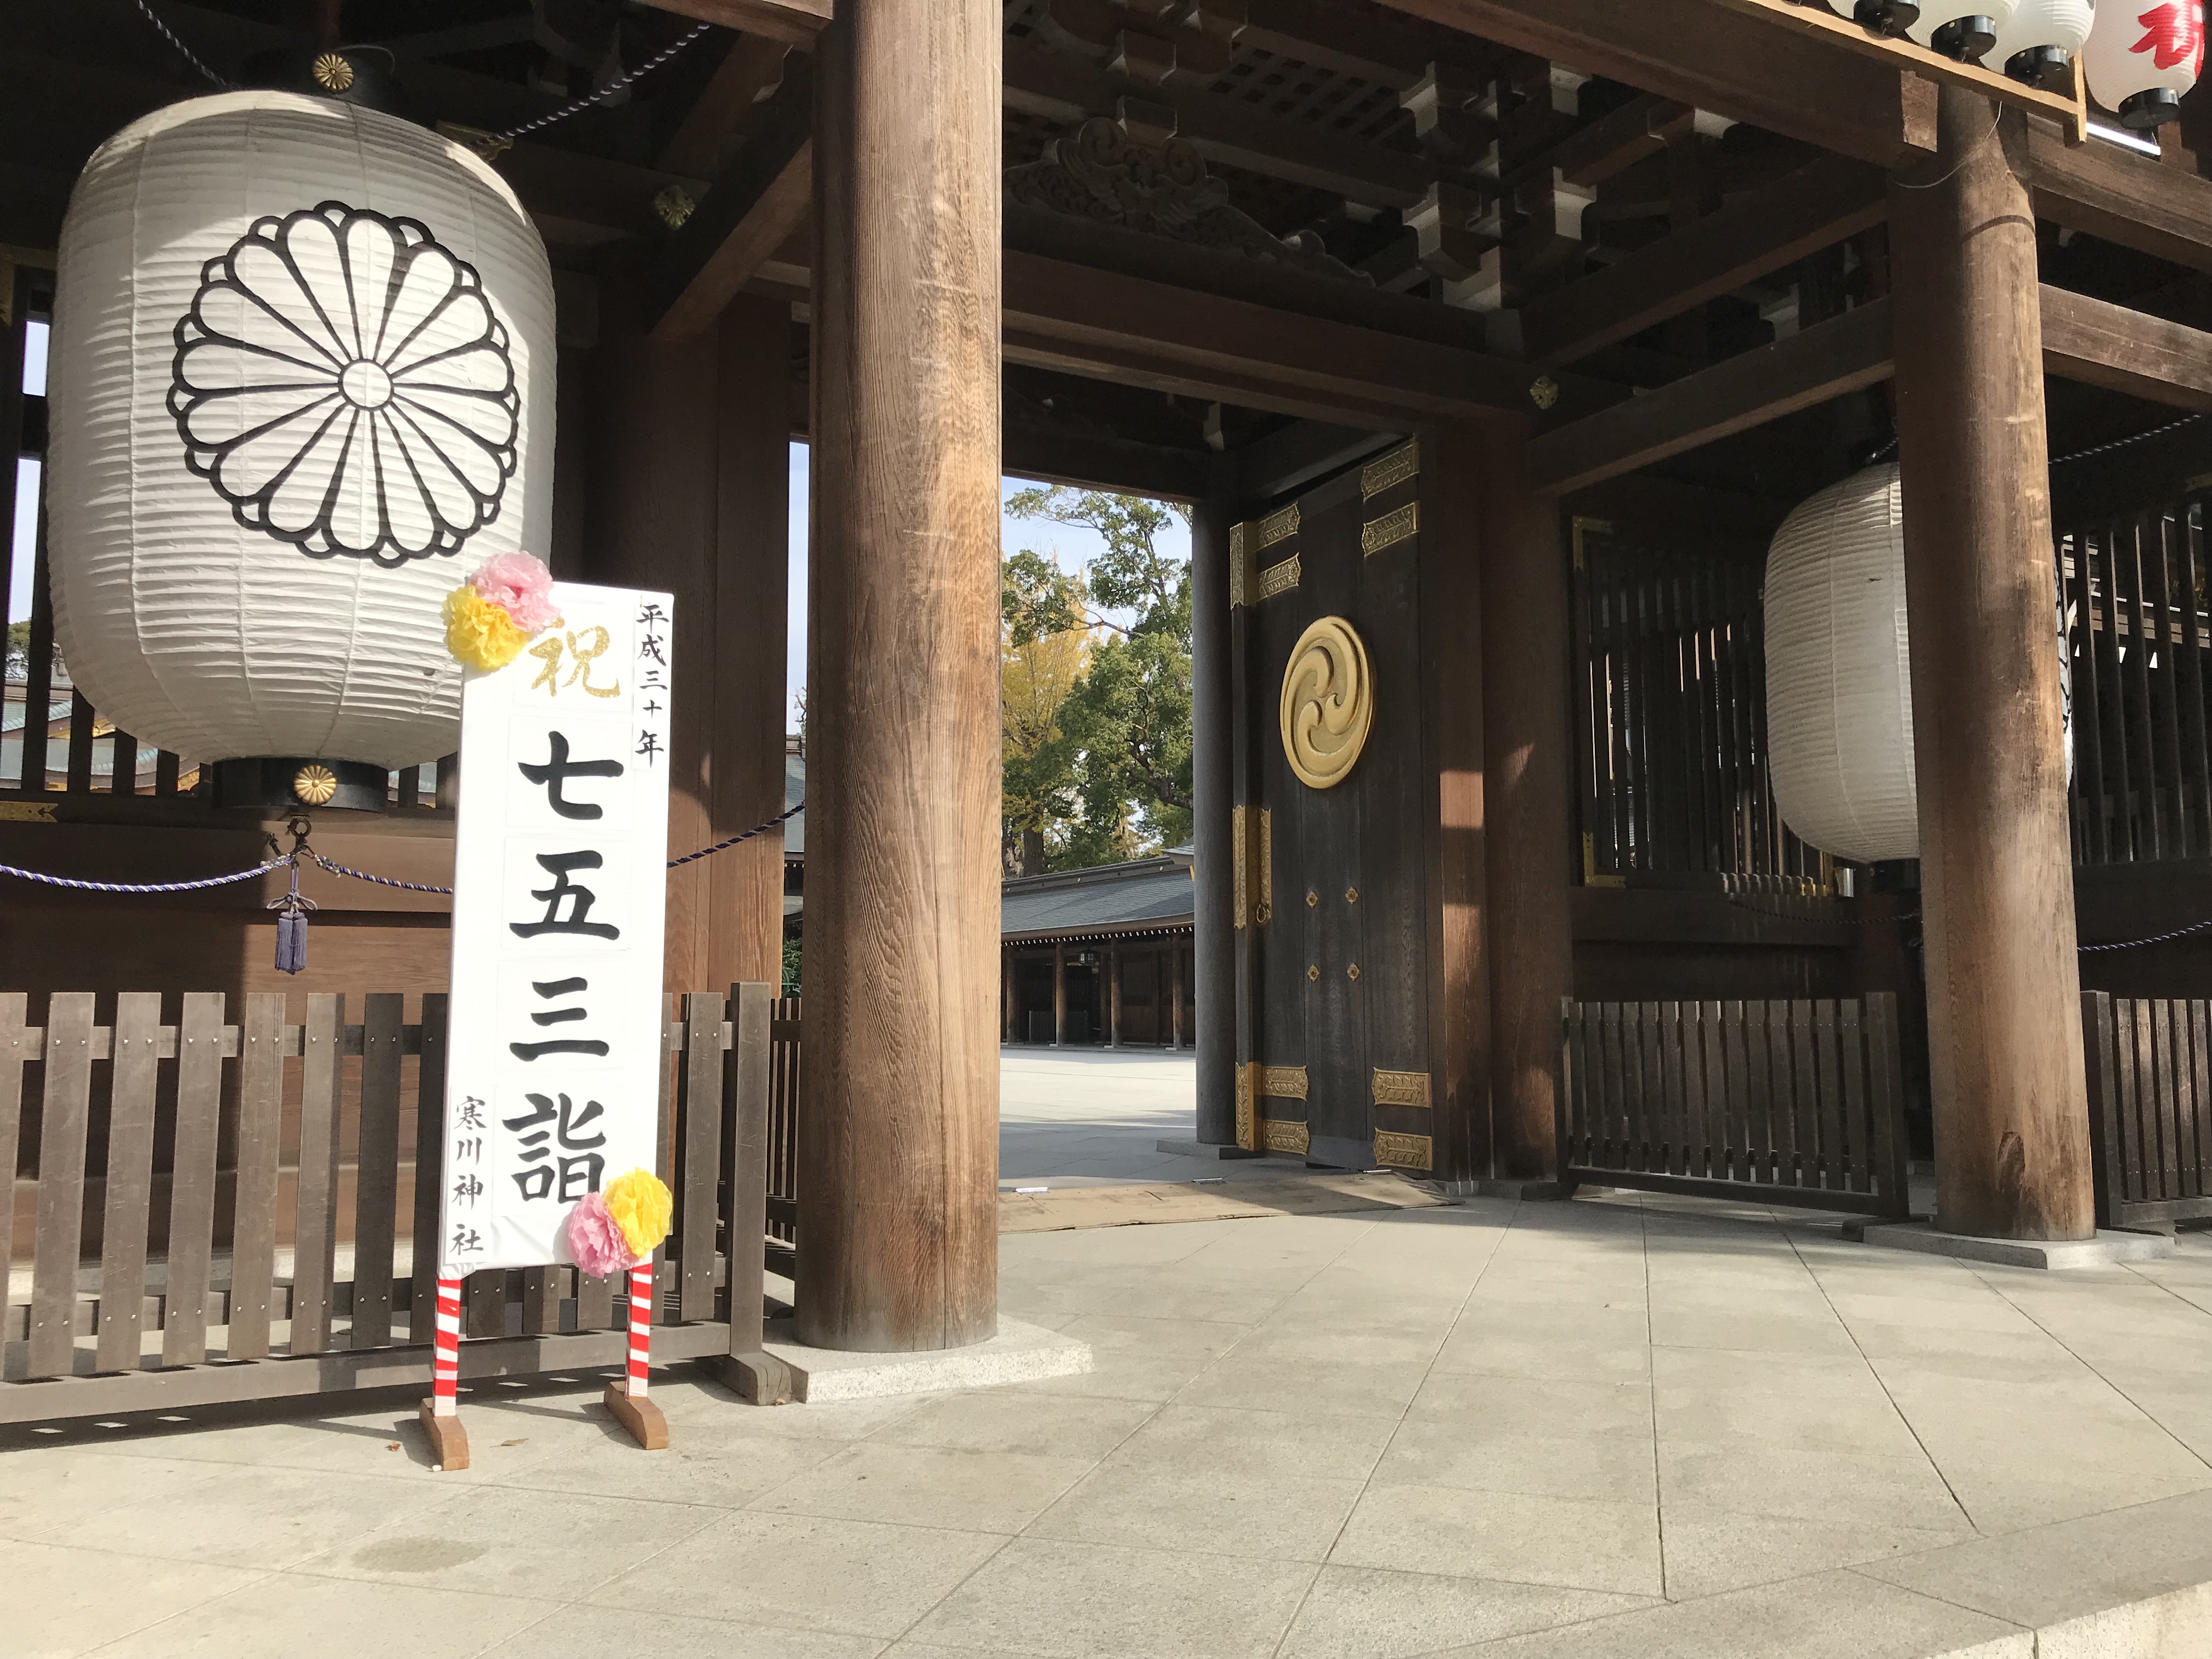 寒川神社で七五三おすすめプラン 受付時間や食事予約 混雑を避ける方法 まいにちrainbow